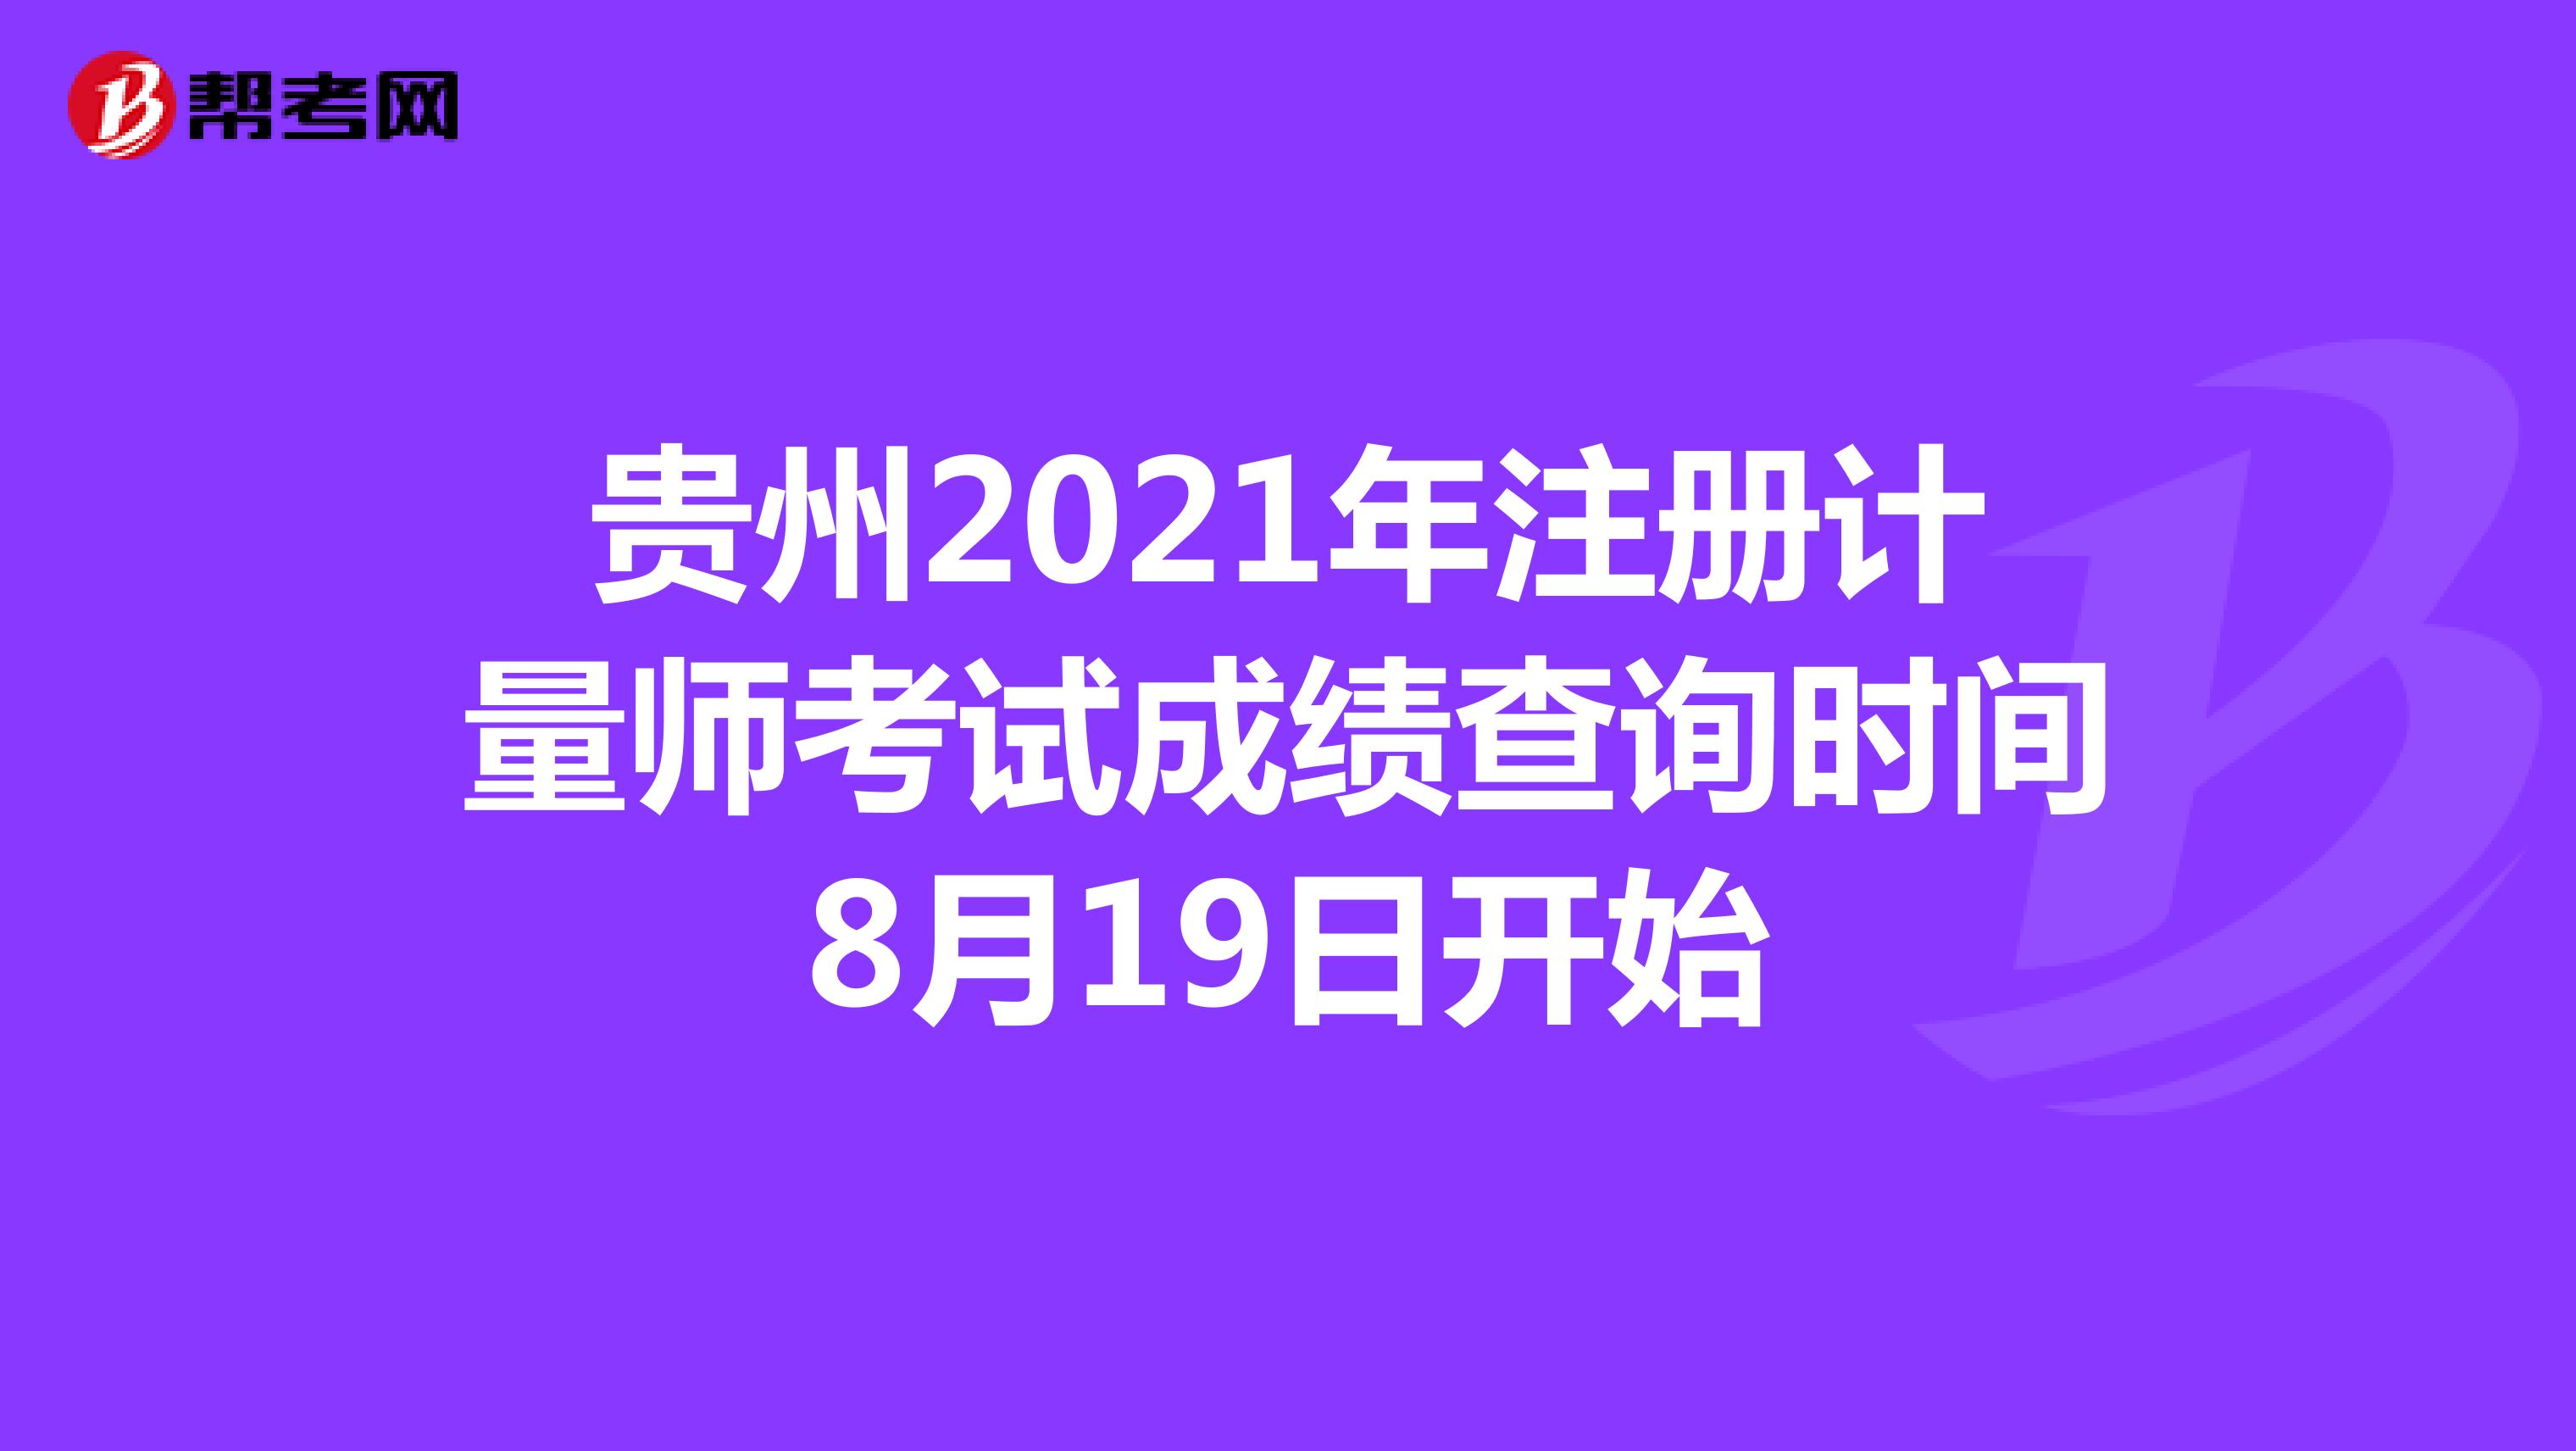 贵州2021年注册计量师考试成绩查询时间8月19日开始